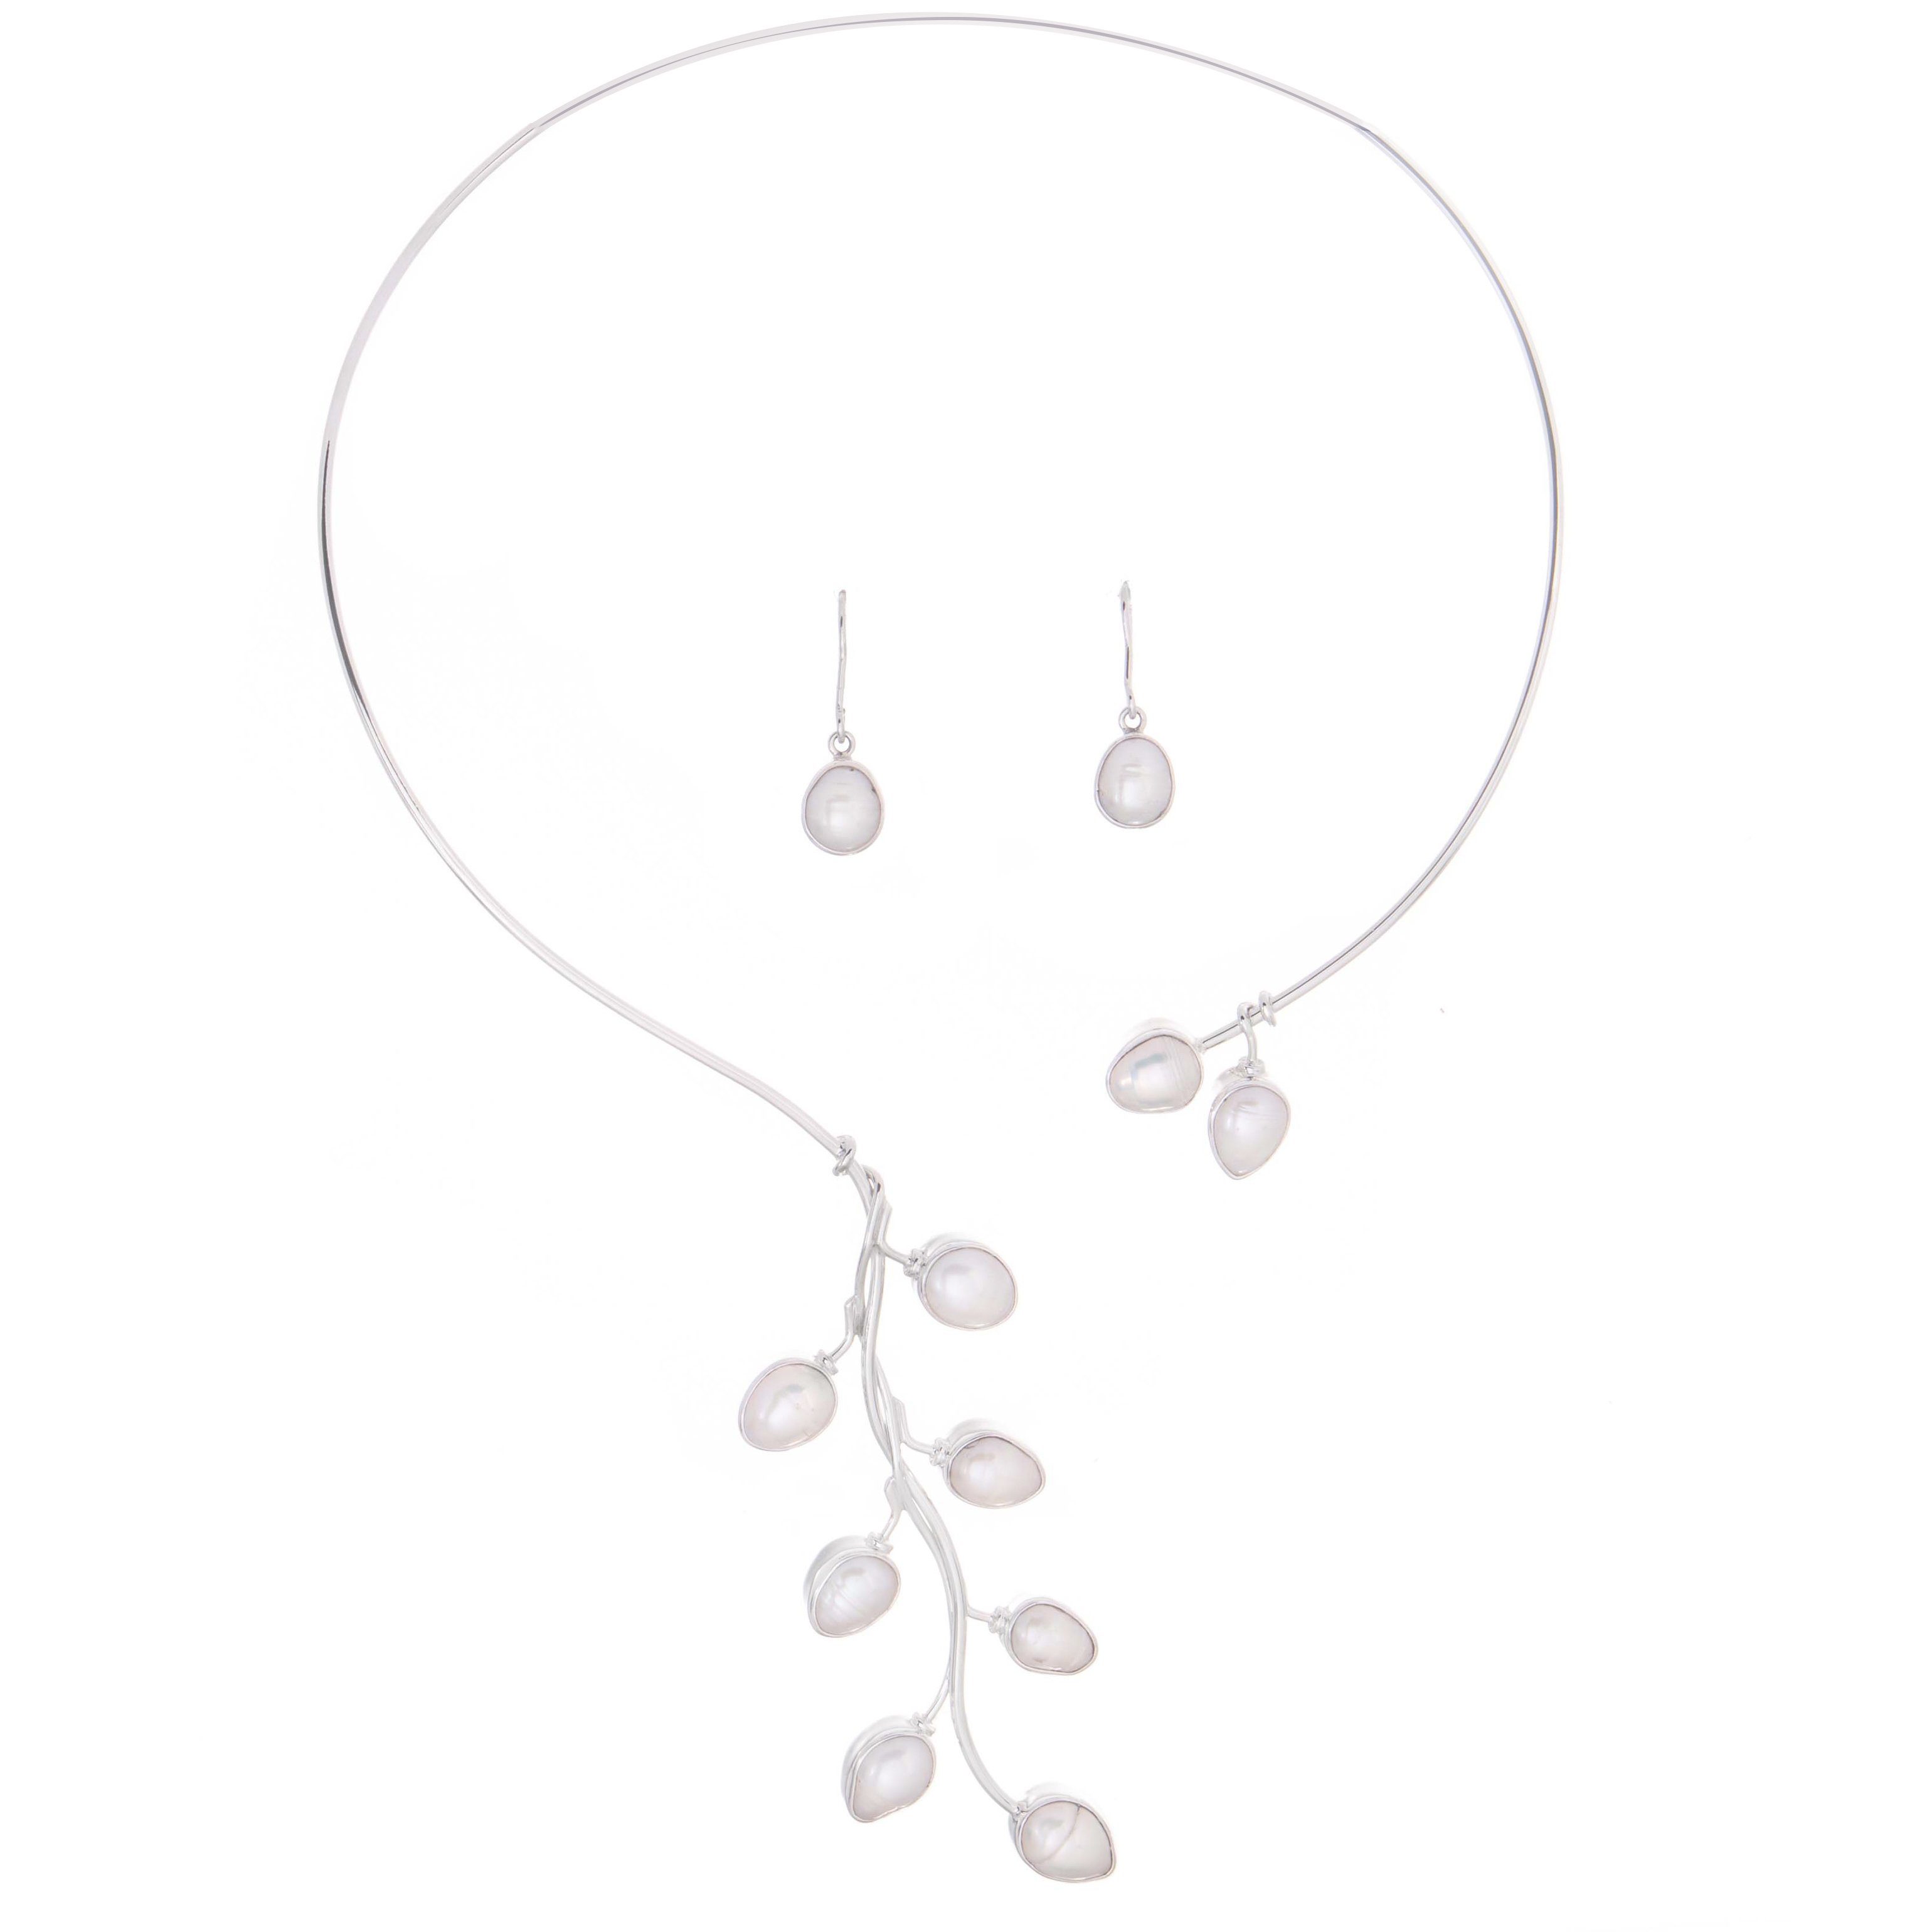 Gargantilla de Plata de colección con perlas biwas